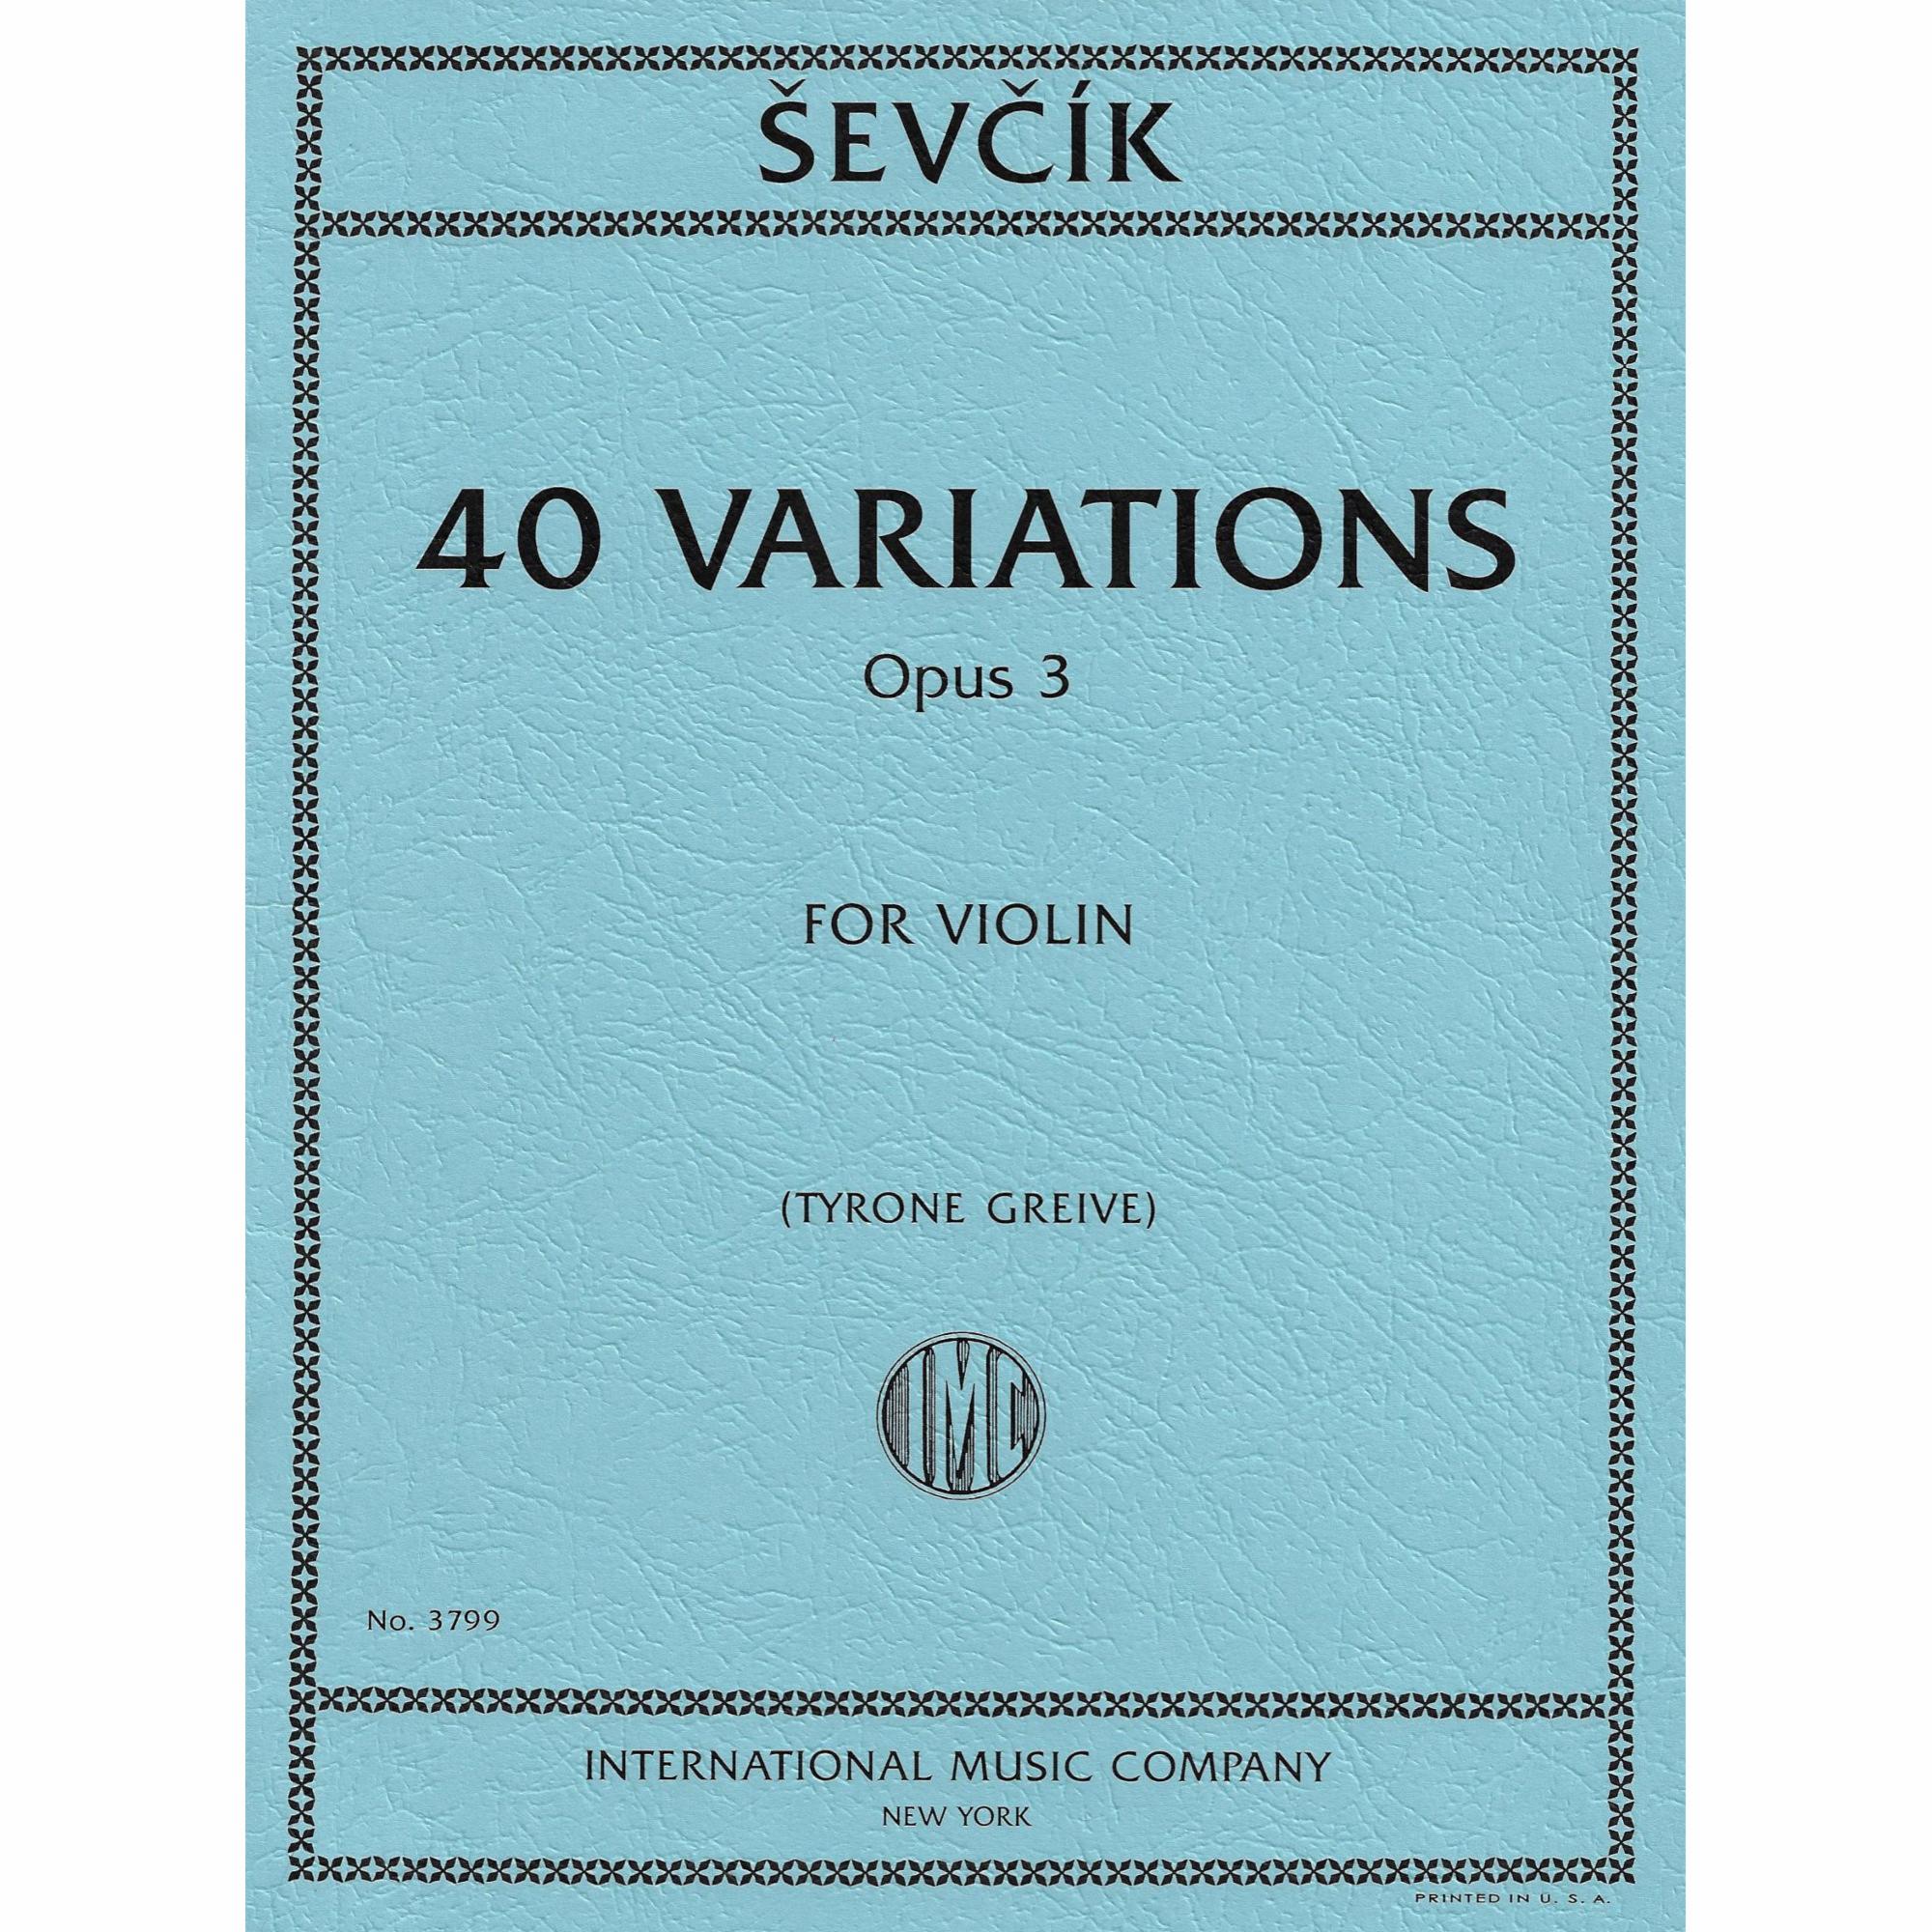 Sevcik -- 40 Variations, Op. 3 for Violin